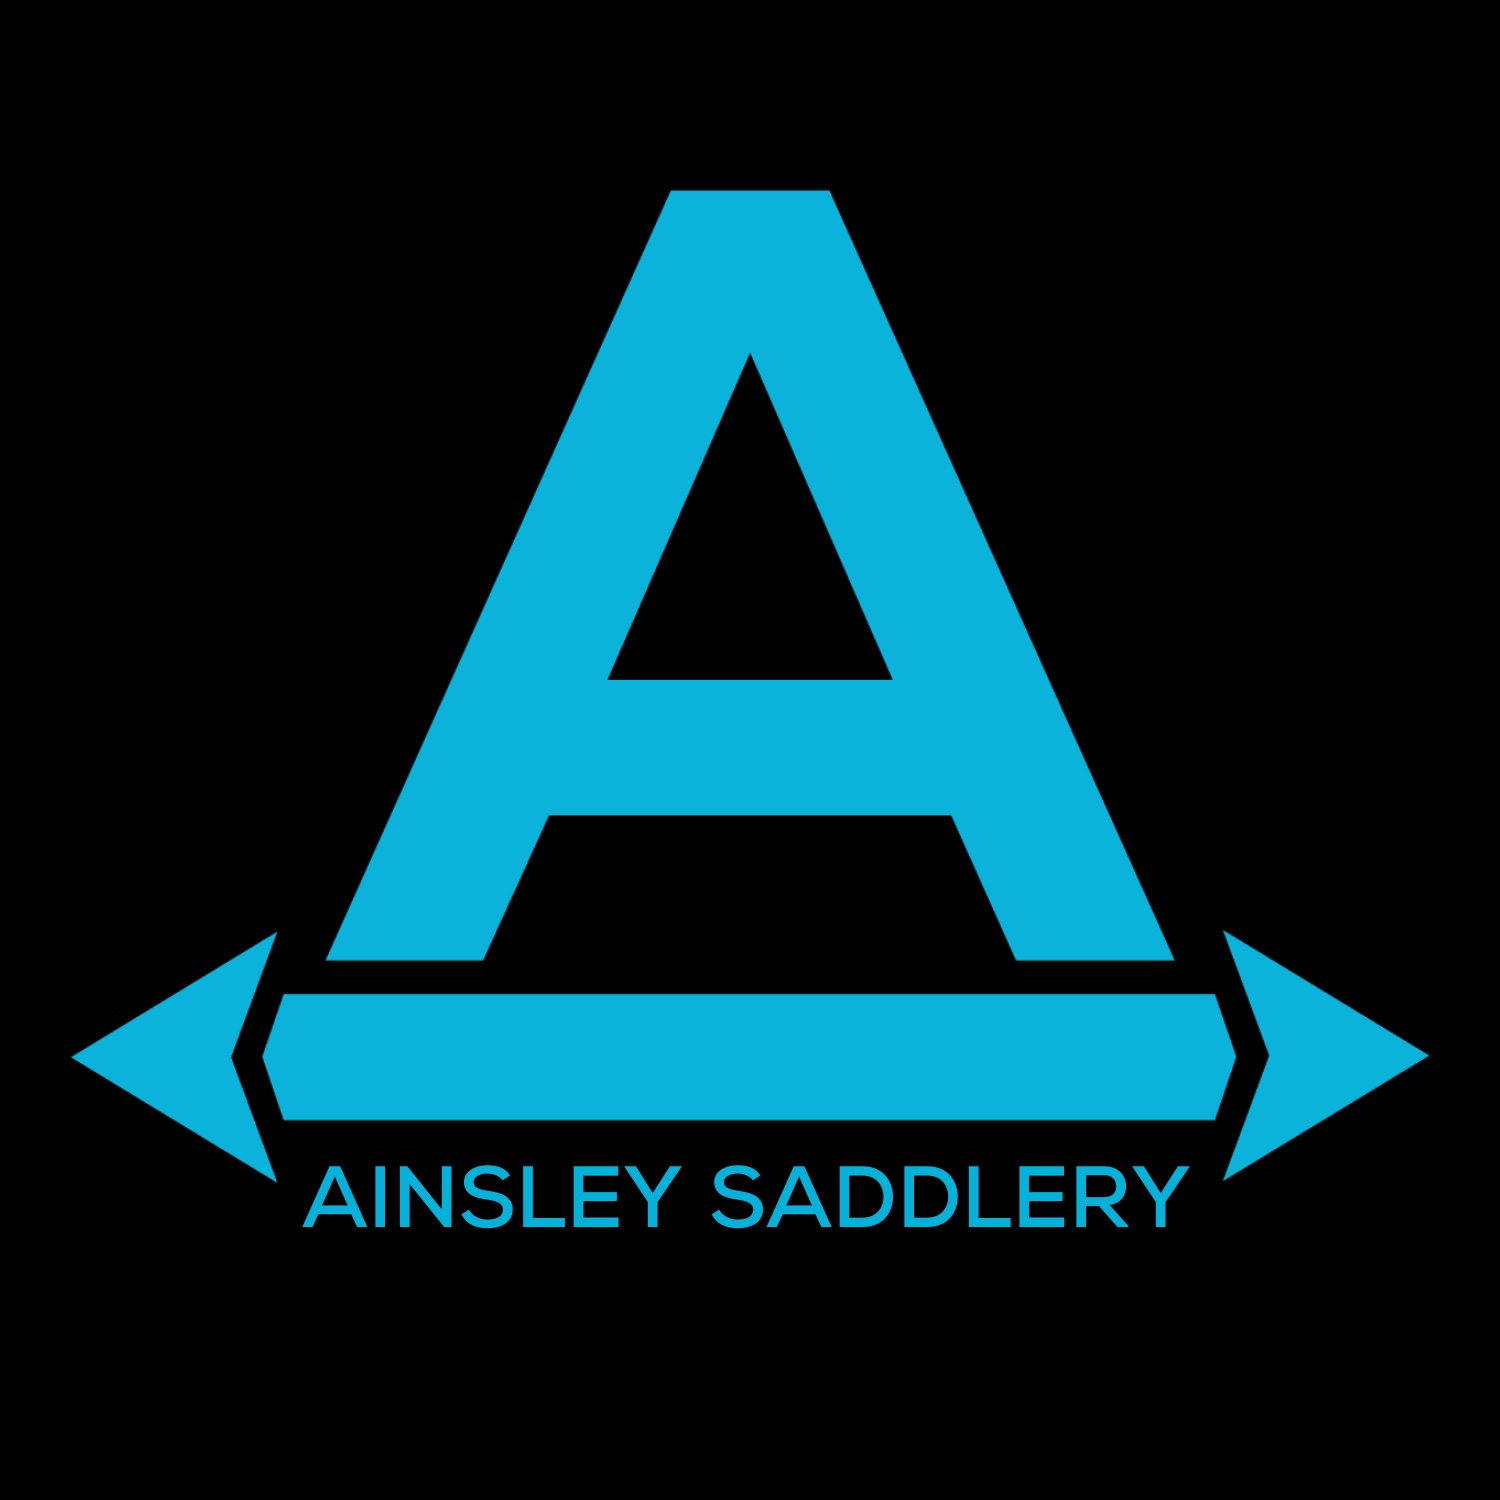 AINSLEY SADDLERY